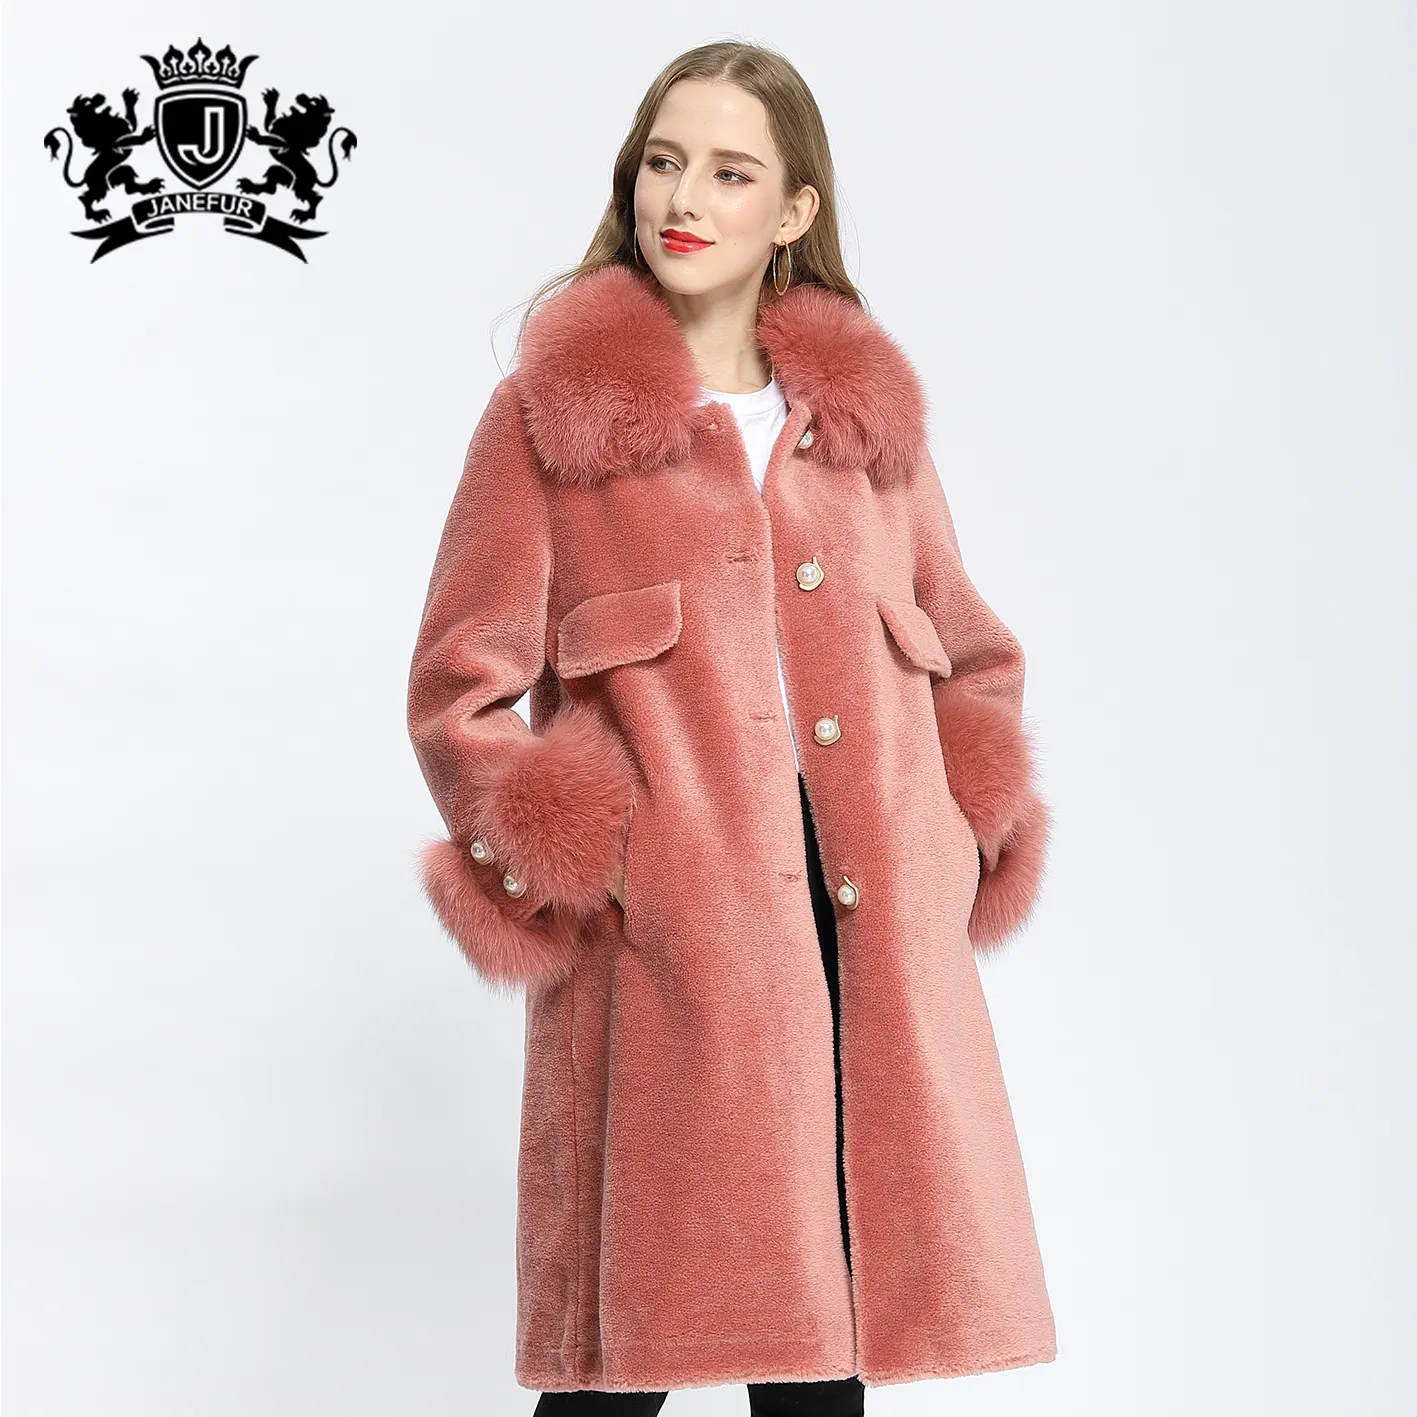 Janefur kadınlar koyun derisi ceket uzun stil zarif gerçek tilki kürk yaka manşet tatlı kız kürk ceket